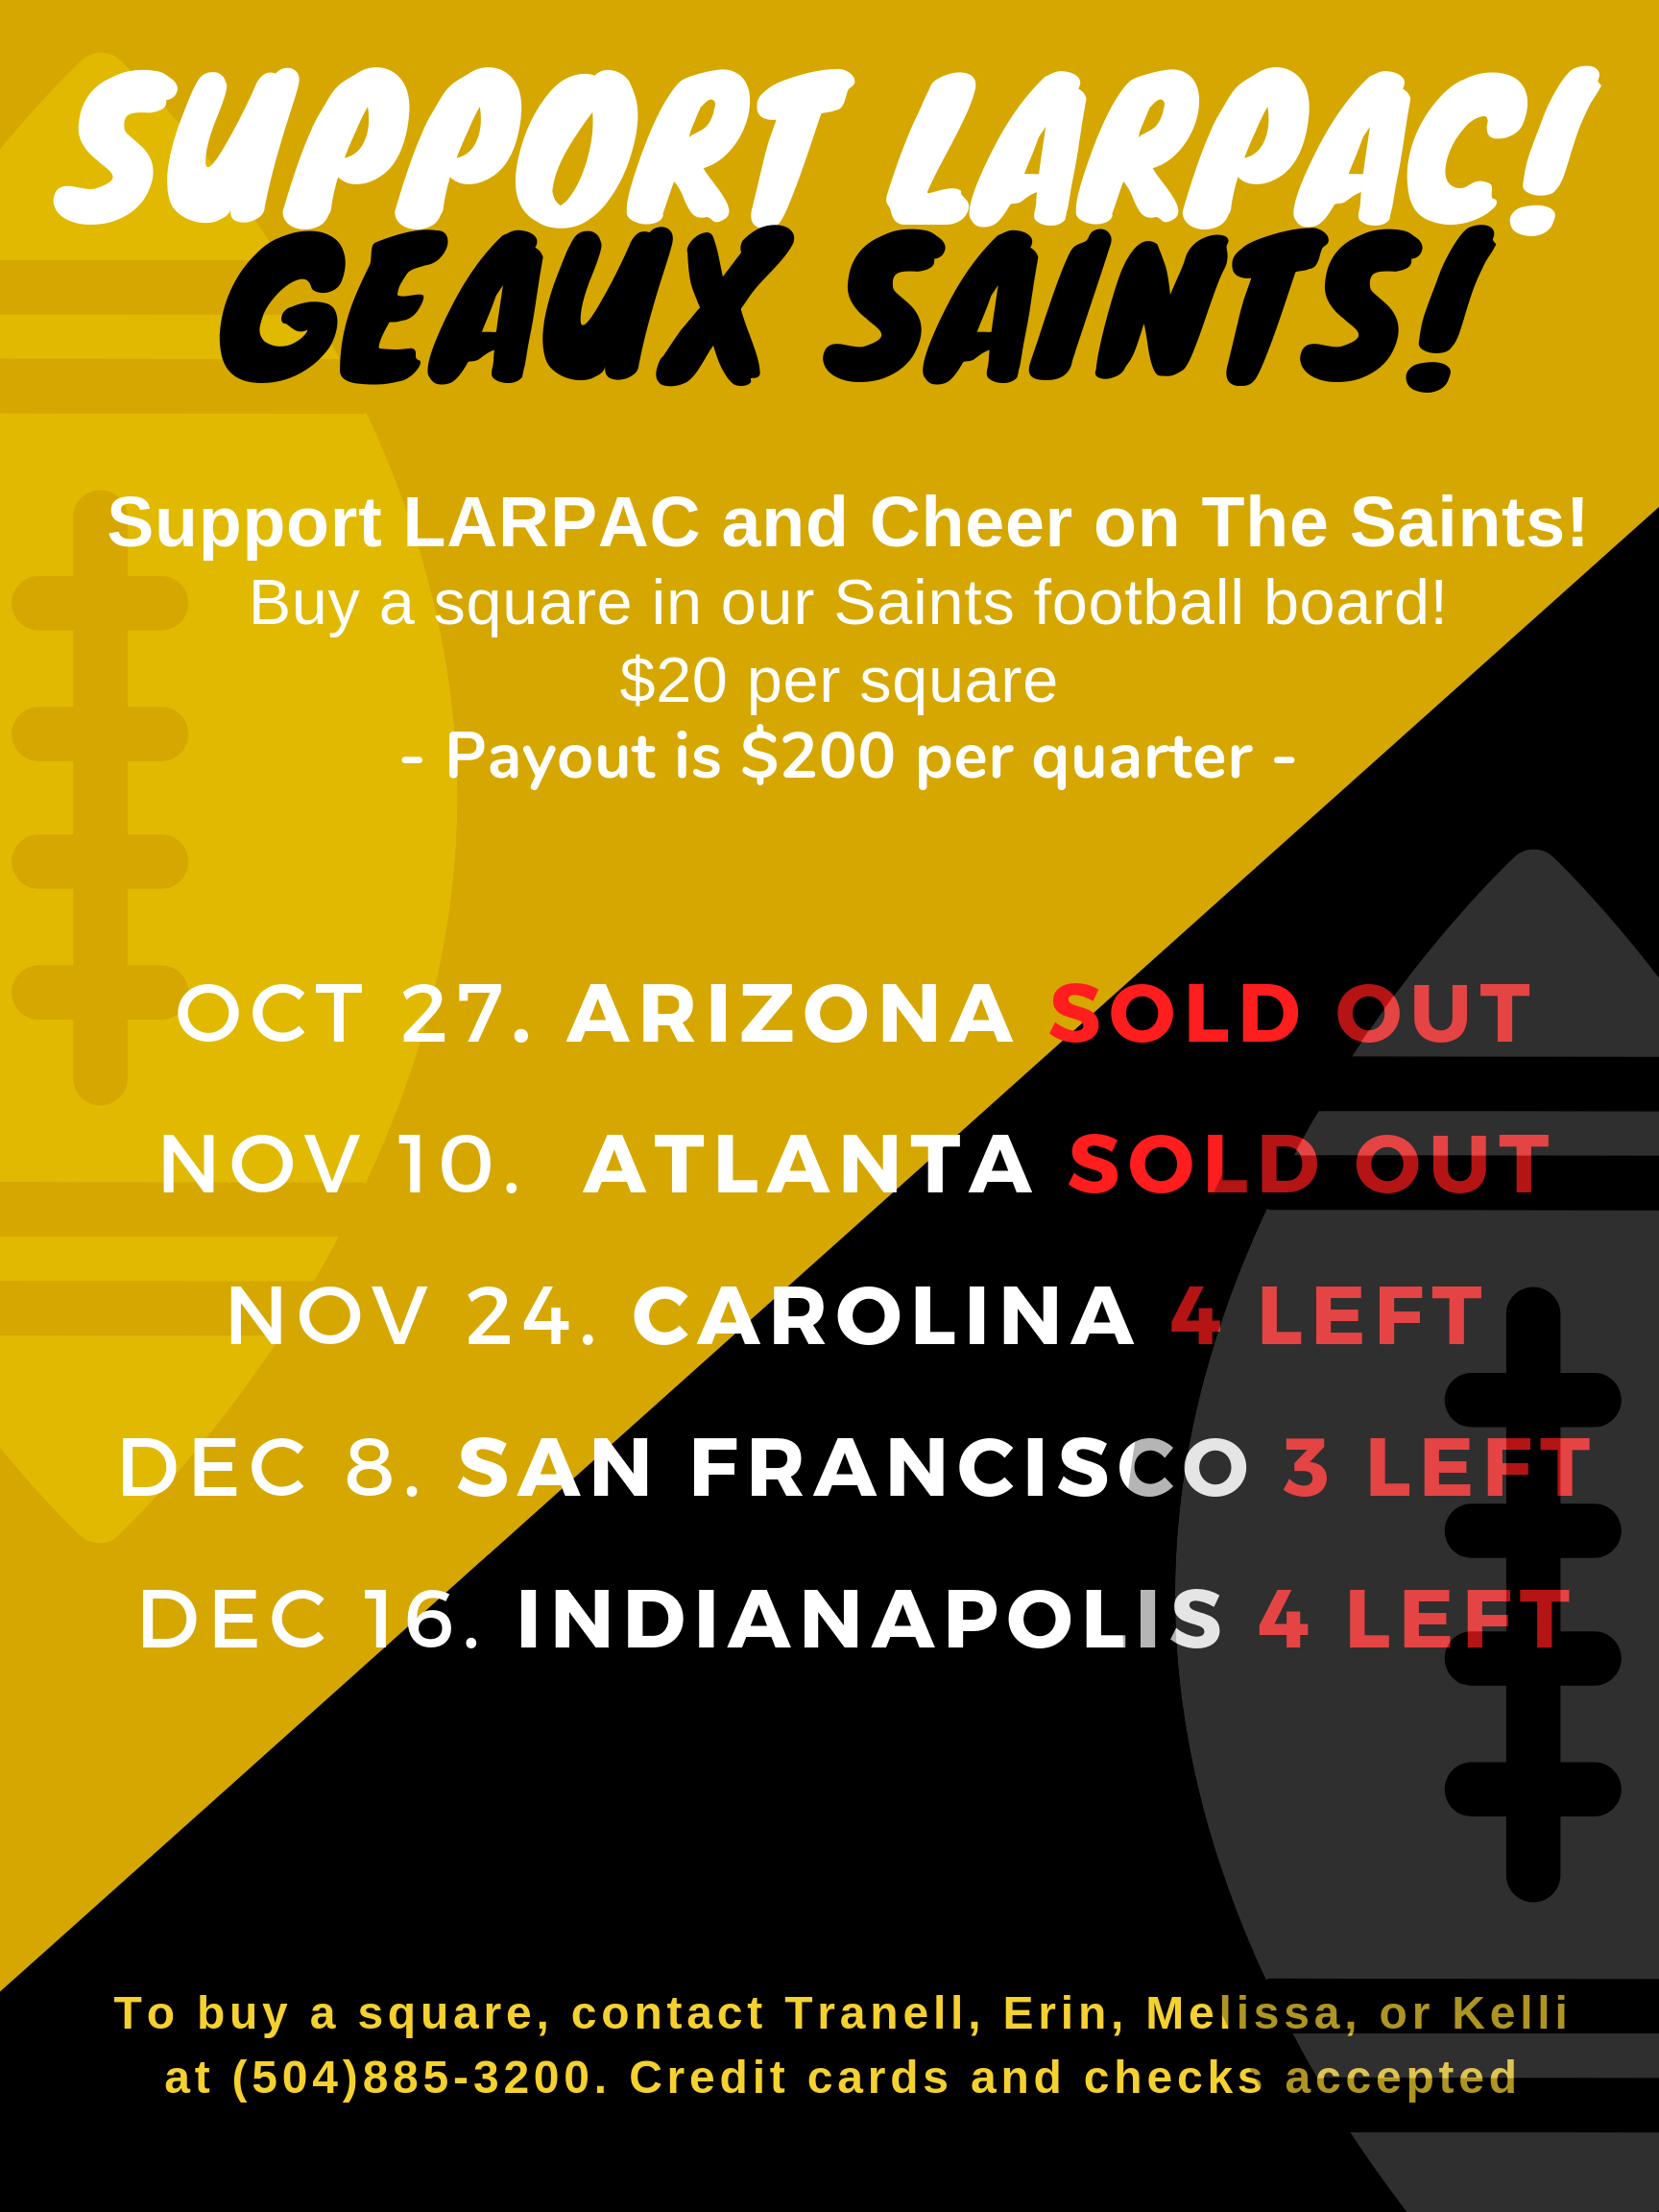 Support Larpac Geaux Saintss